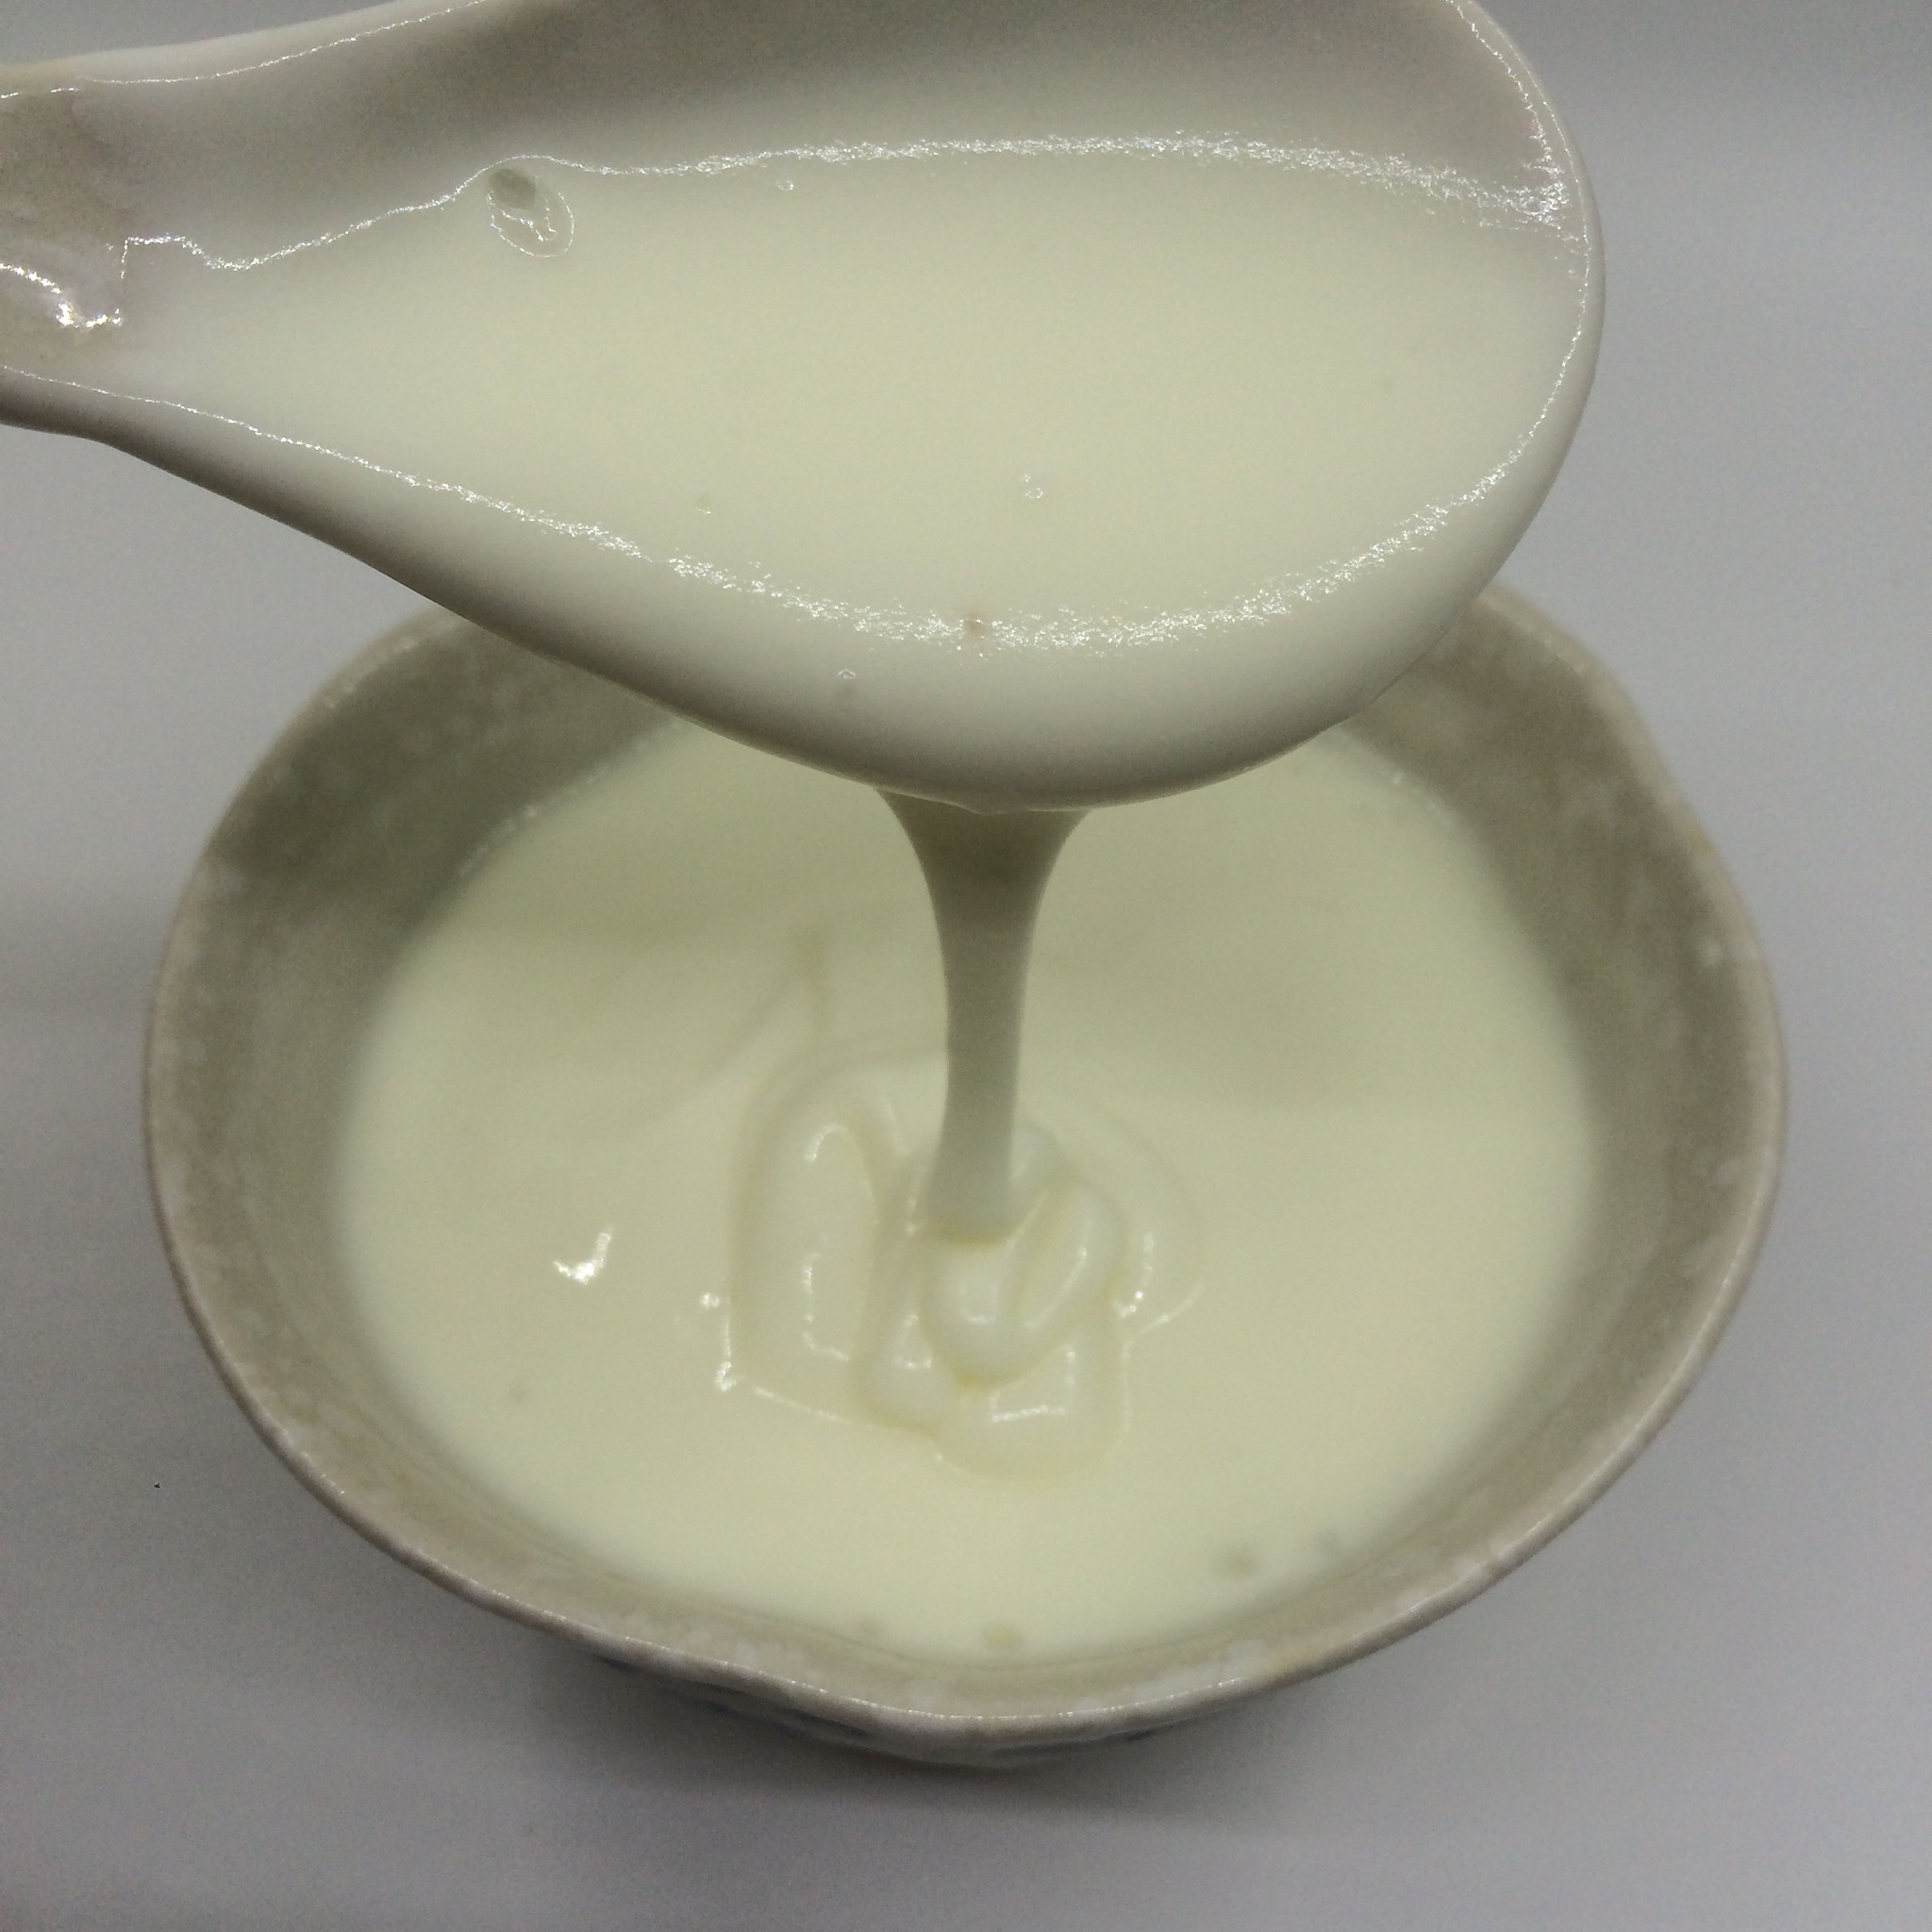 超超超级简单的希腊酸奶做法